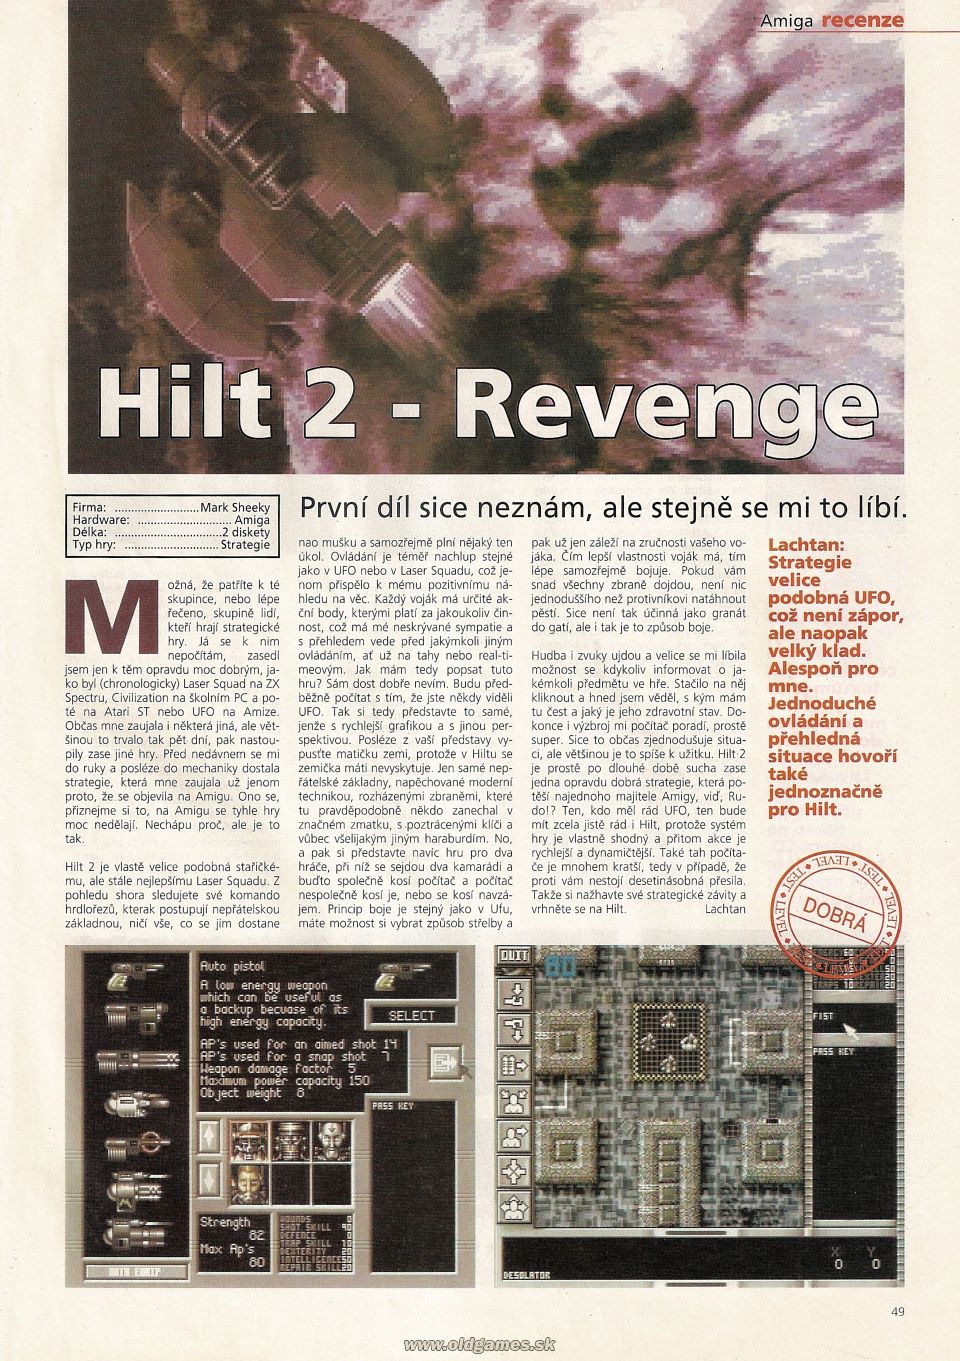 Hilt 2: Revenge